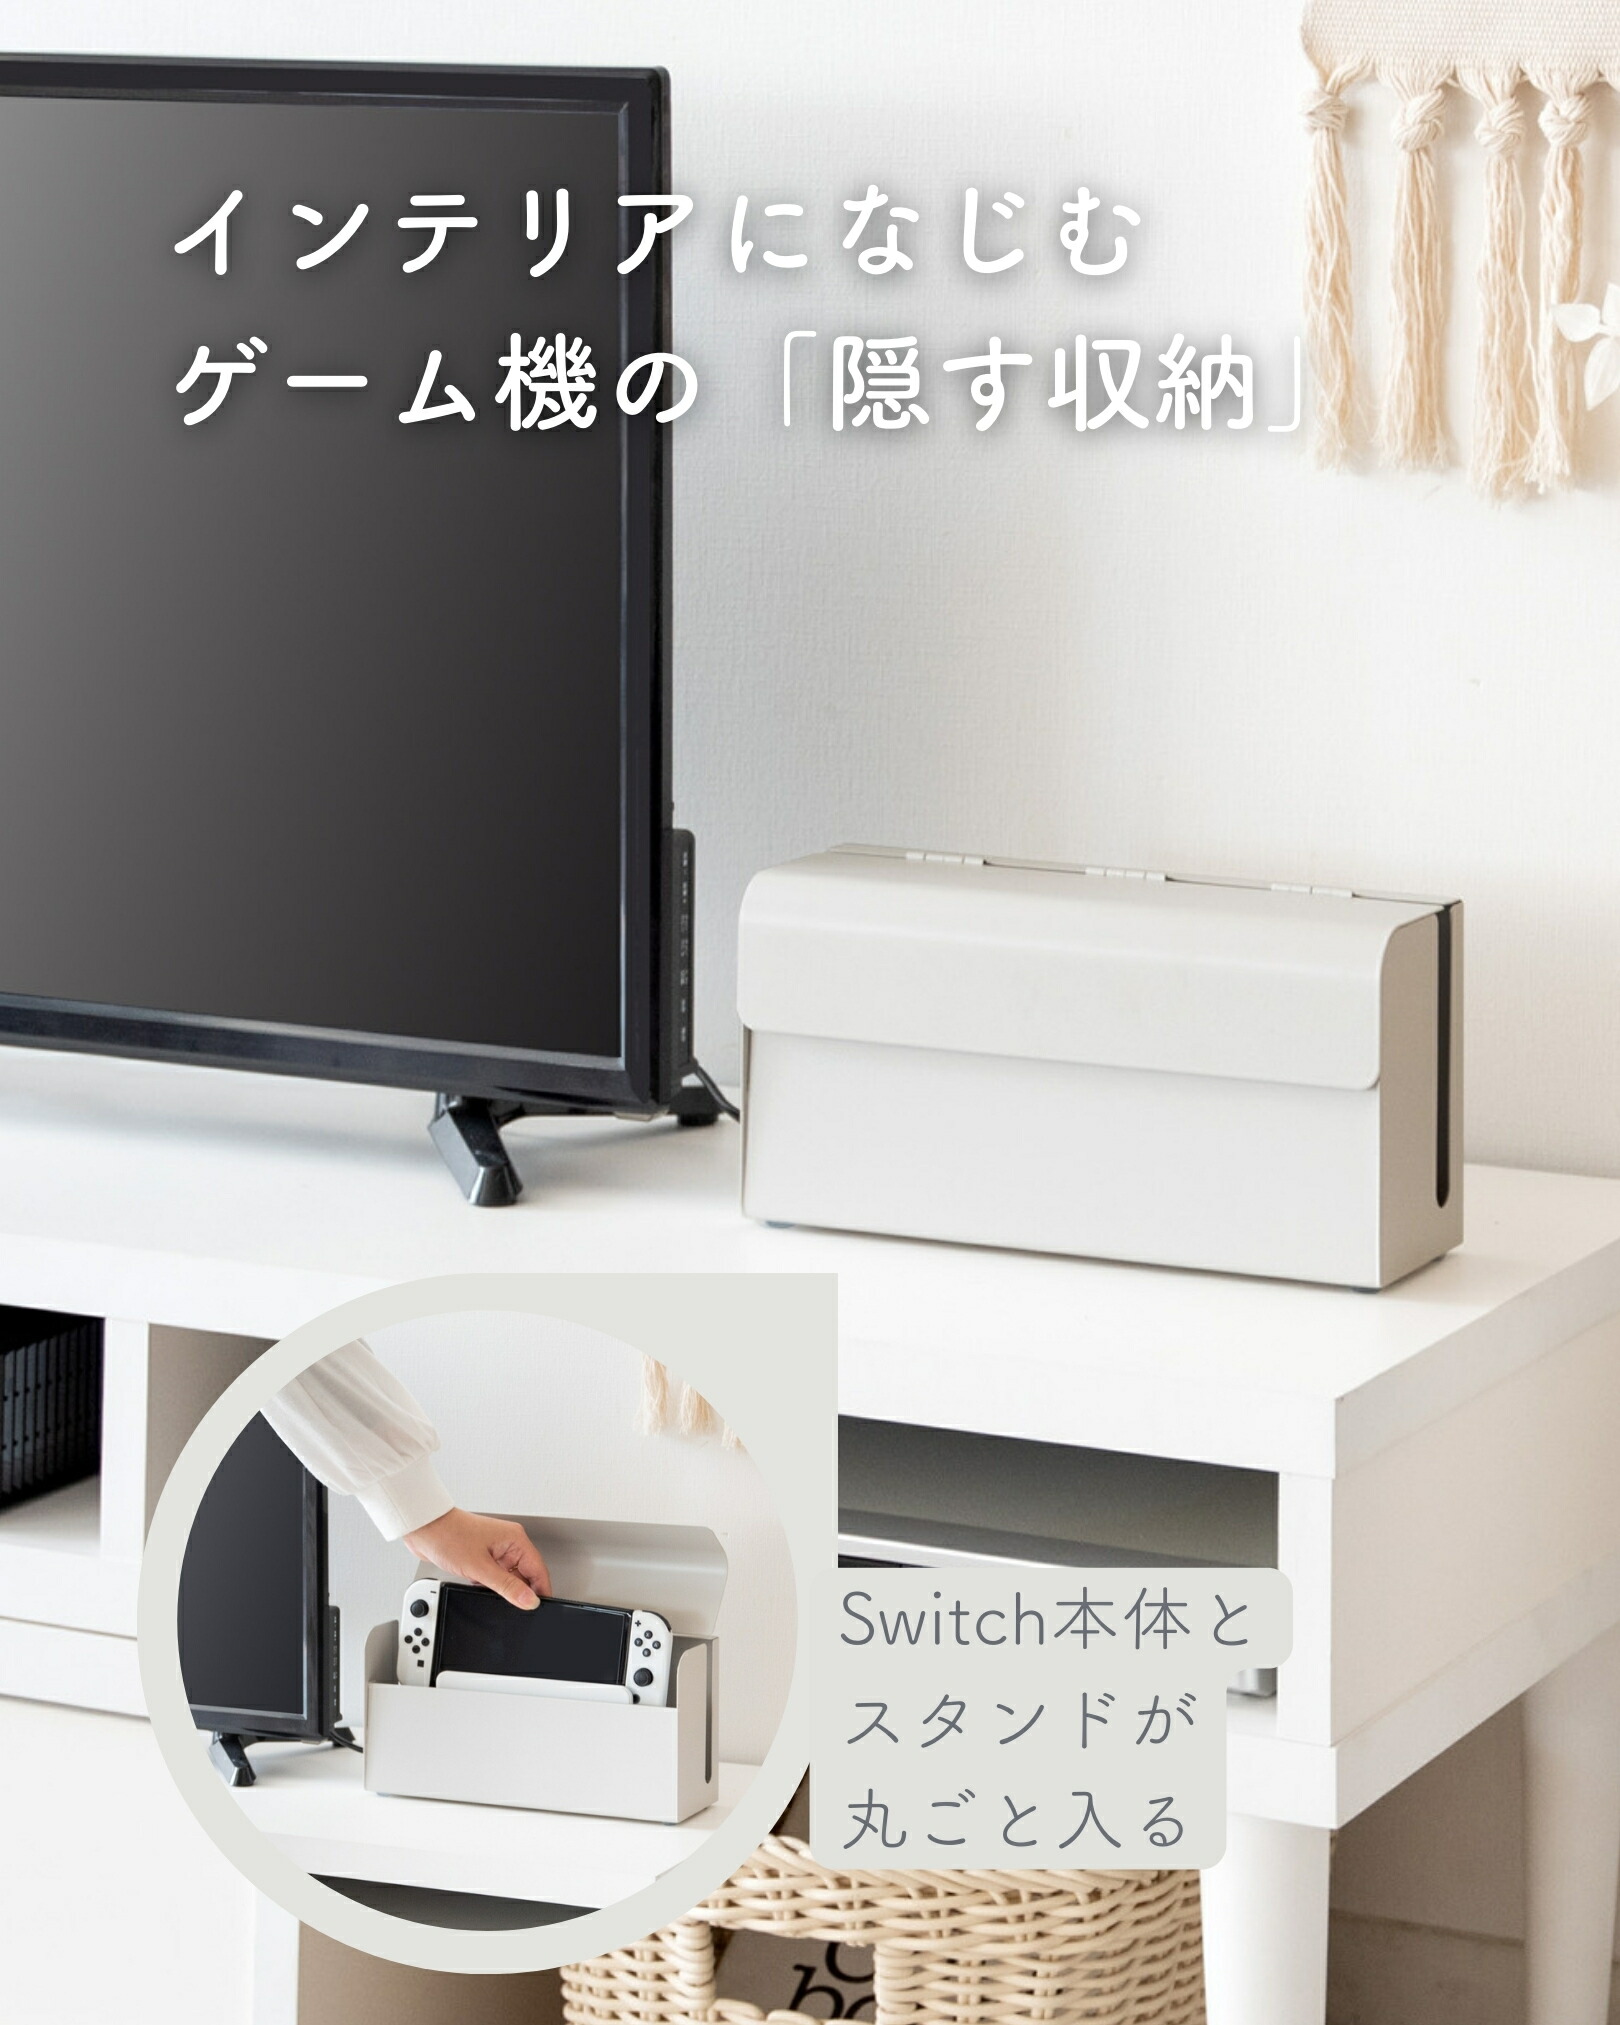 Nintendo Switch用 収納ケース 幅28 奥行9 高さ14cm 隠す収納 収納 